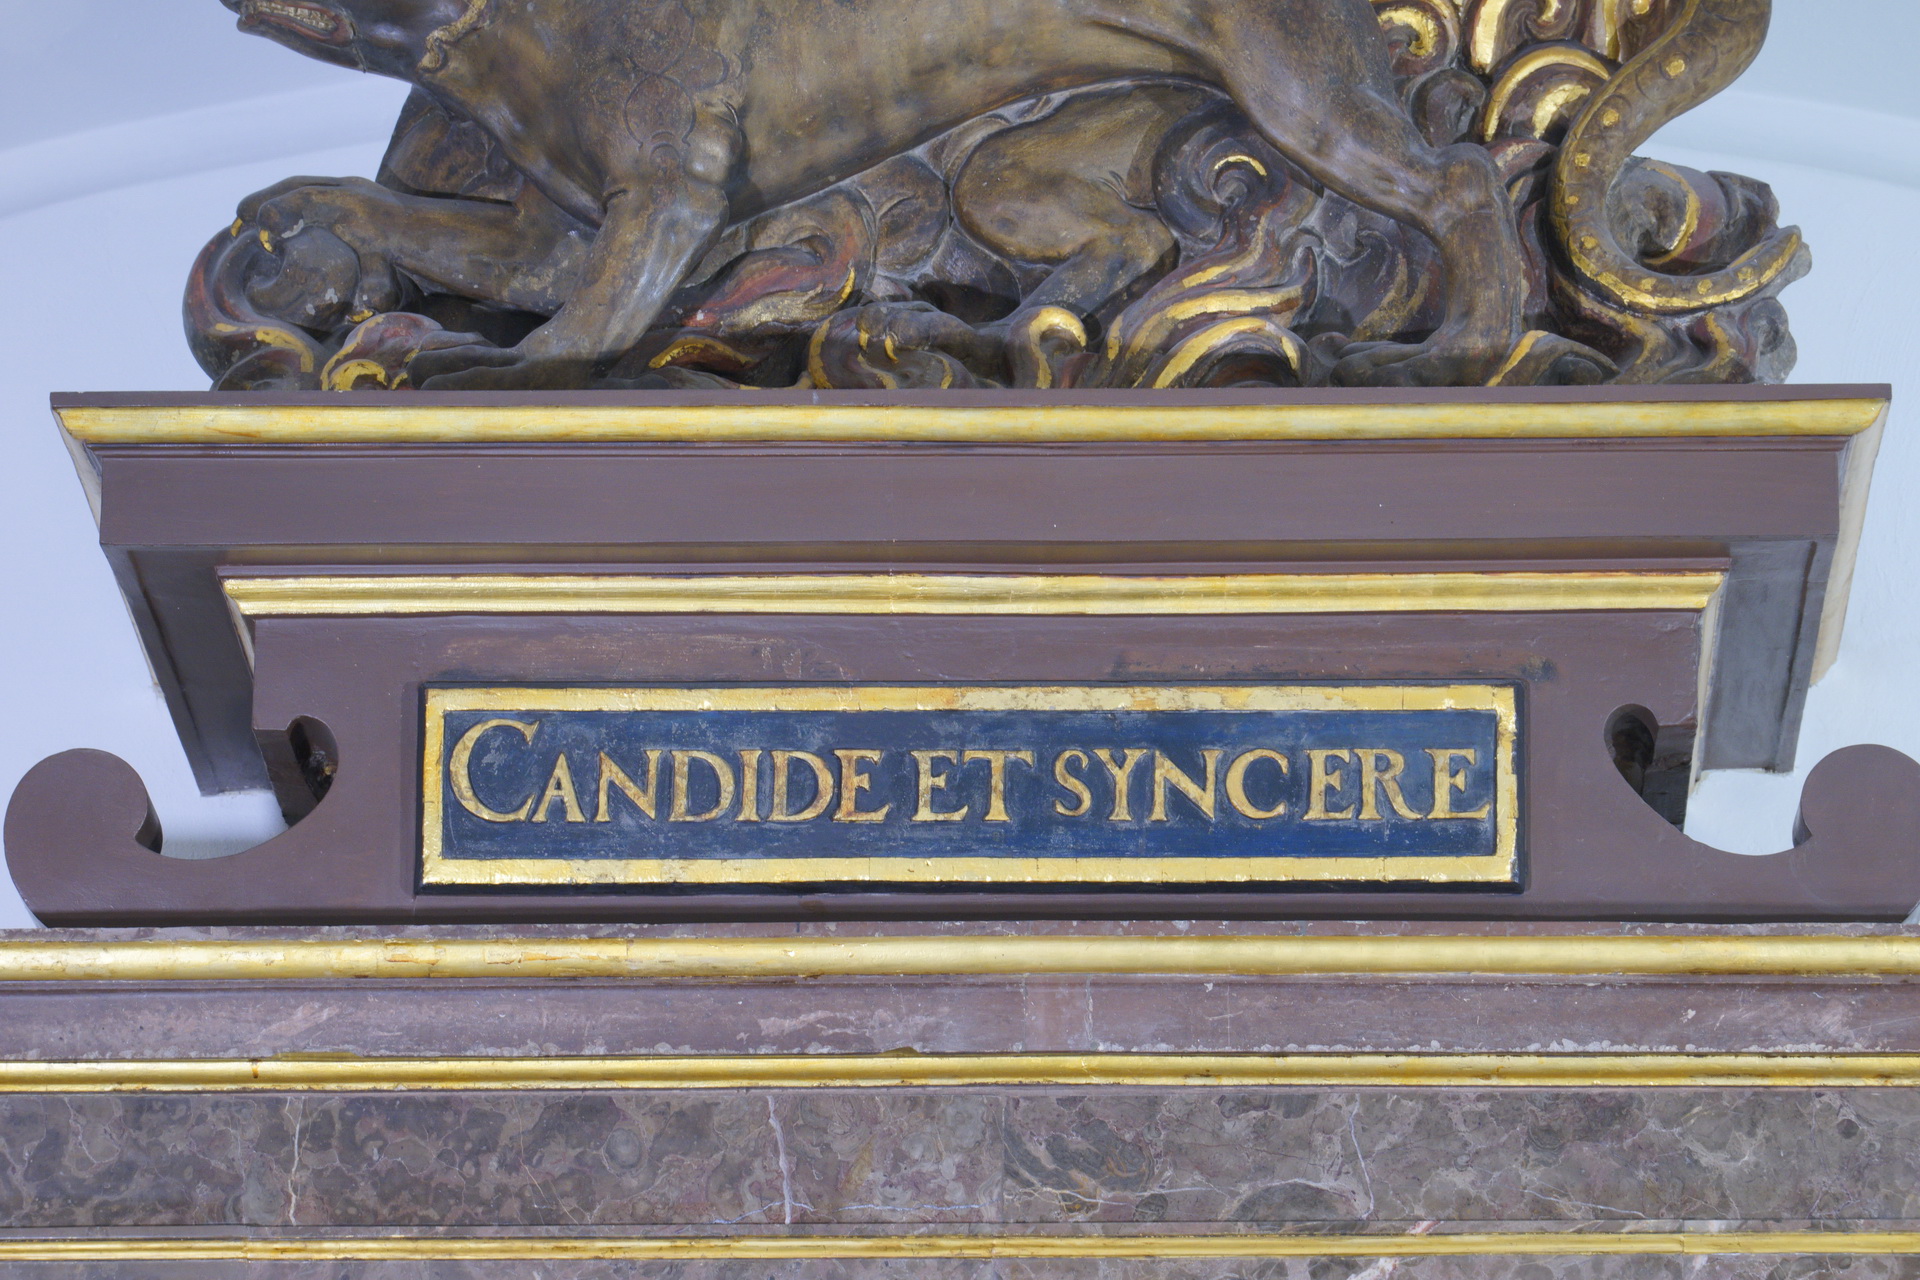 Zwieńczenie kominka w Sali Zimowej. Łacińska sentencja Candide et syncere. Tłumaczenie: Szczerze i rzetelnie.